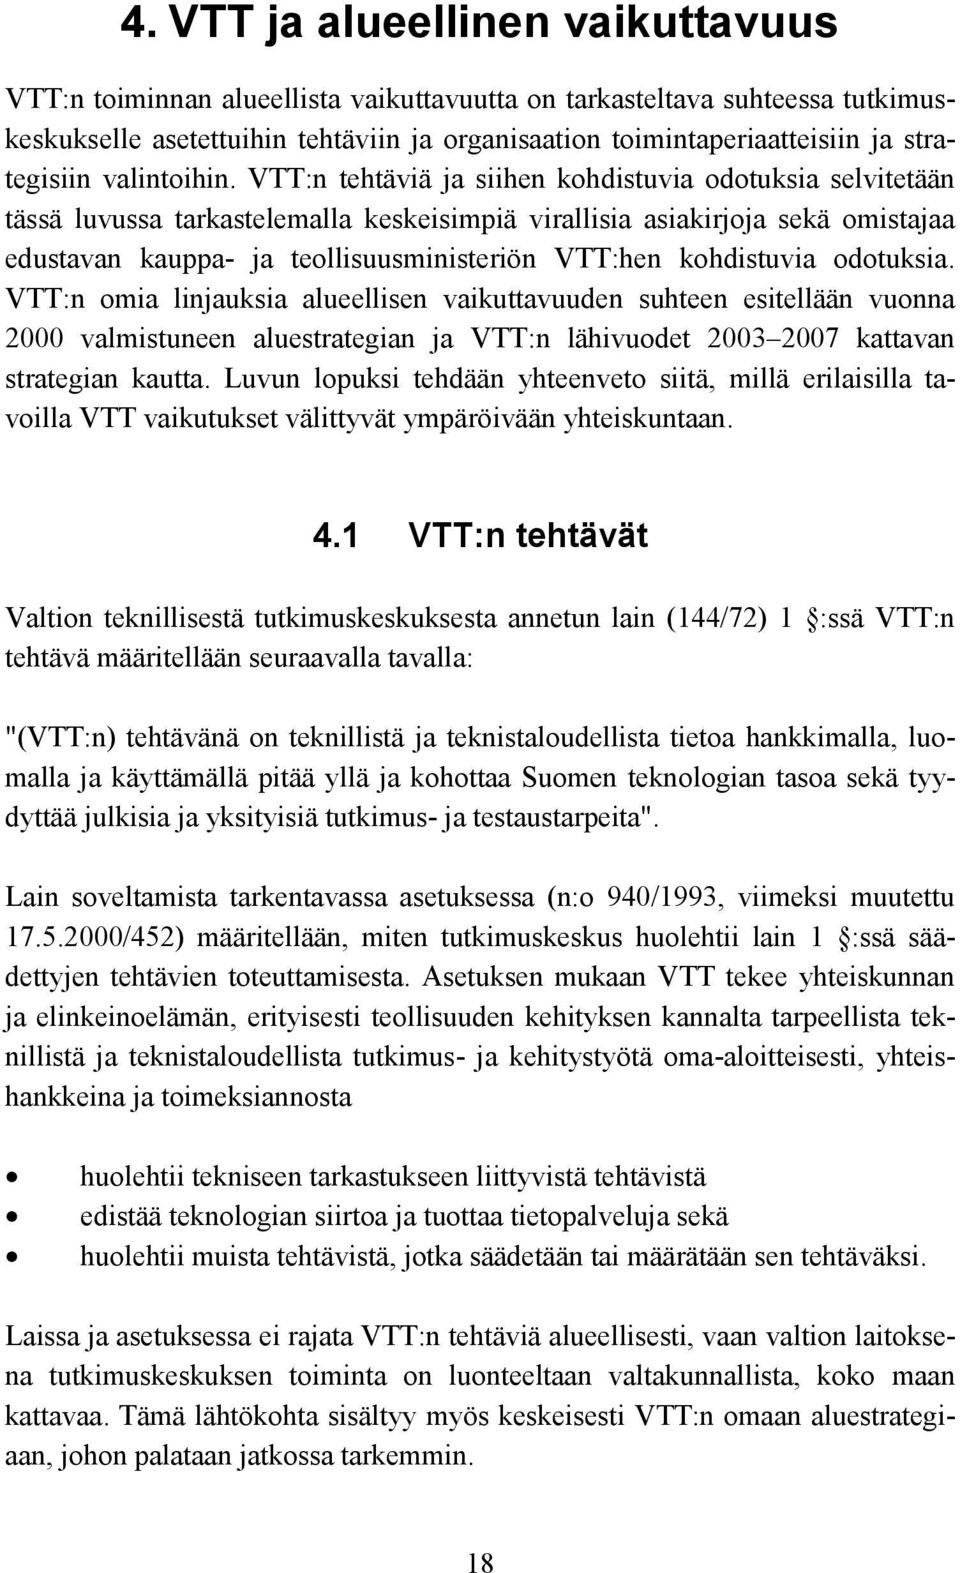 VTT:n tehtäviä ja siihen kohdistuvia odotuksia selvitetään tässä luvussa tarkastelemalla keskeisimpiä virallisia asiakirjoja sekä omistajaa edustavan kauppa- ja teollisuusministeriön VTT:hen